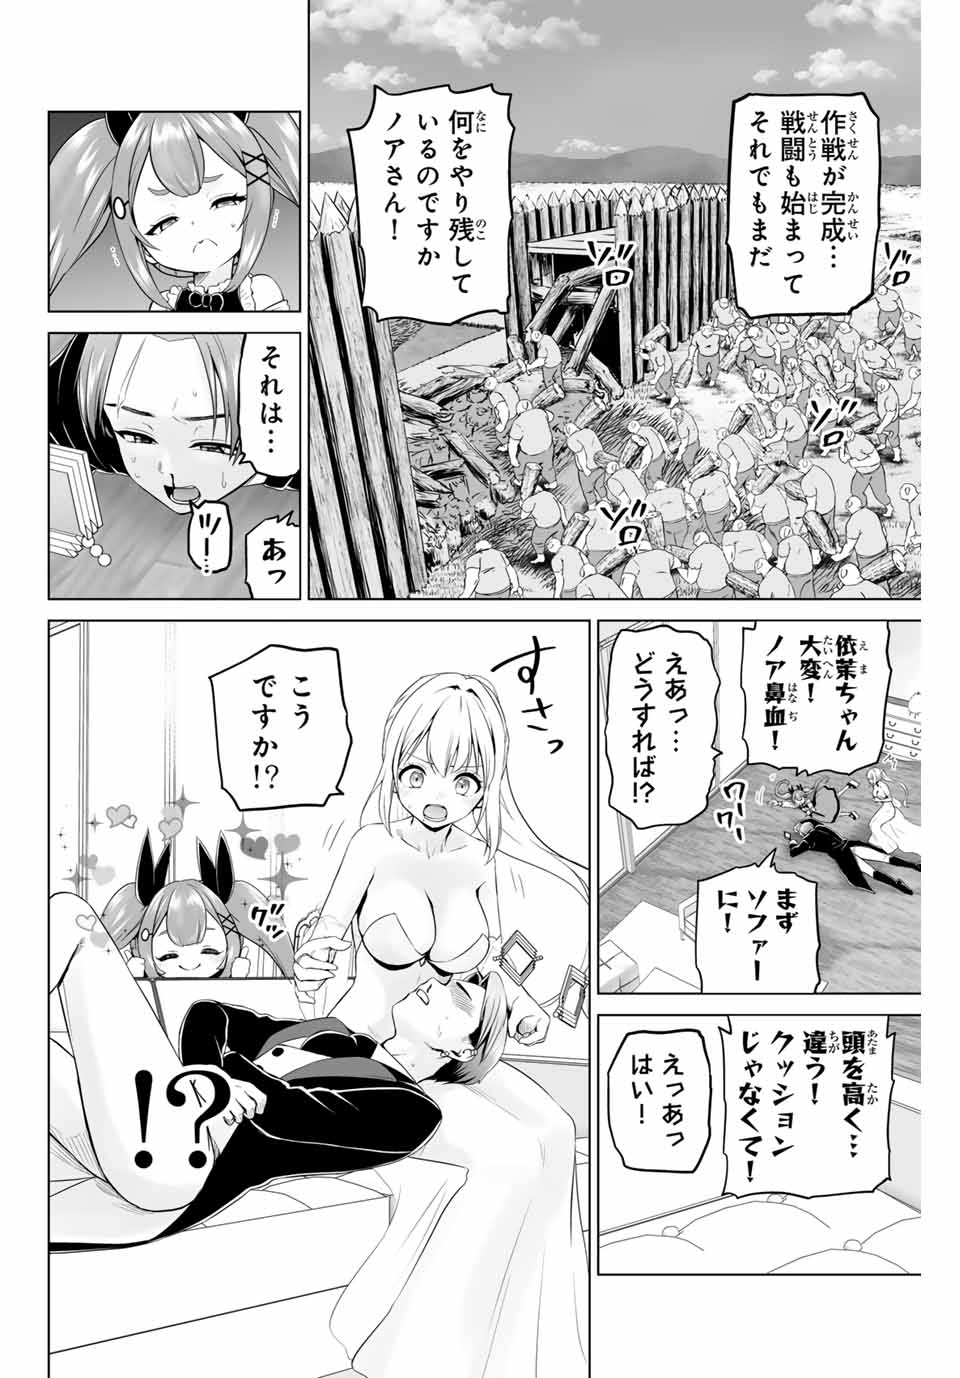 Gunshin No Takuto - Chapter 10 - Page 2